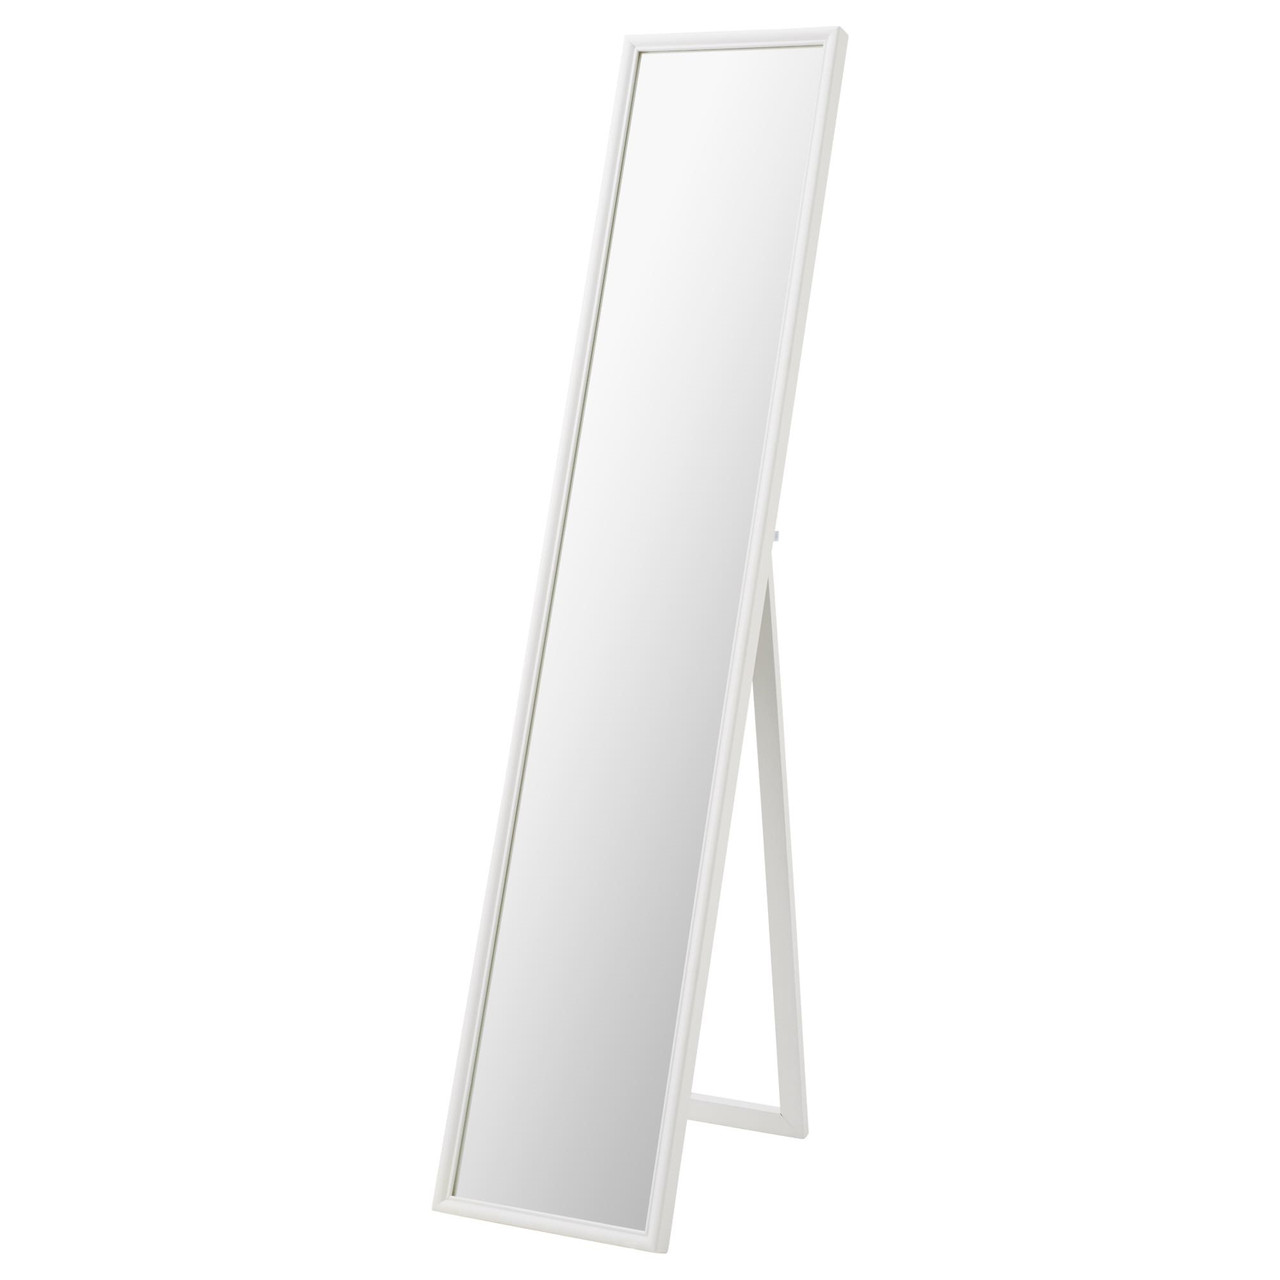 Зеркало напольное ФЛАКНАН белый ИКЕА, IKEA